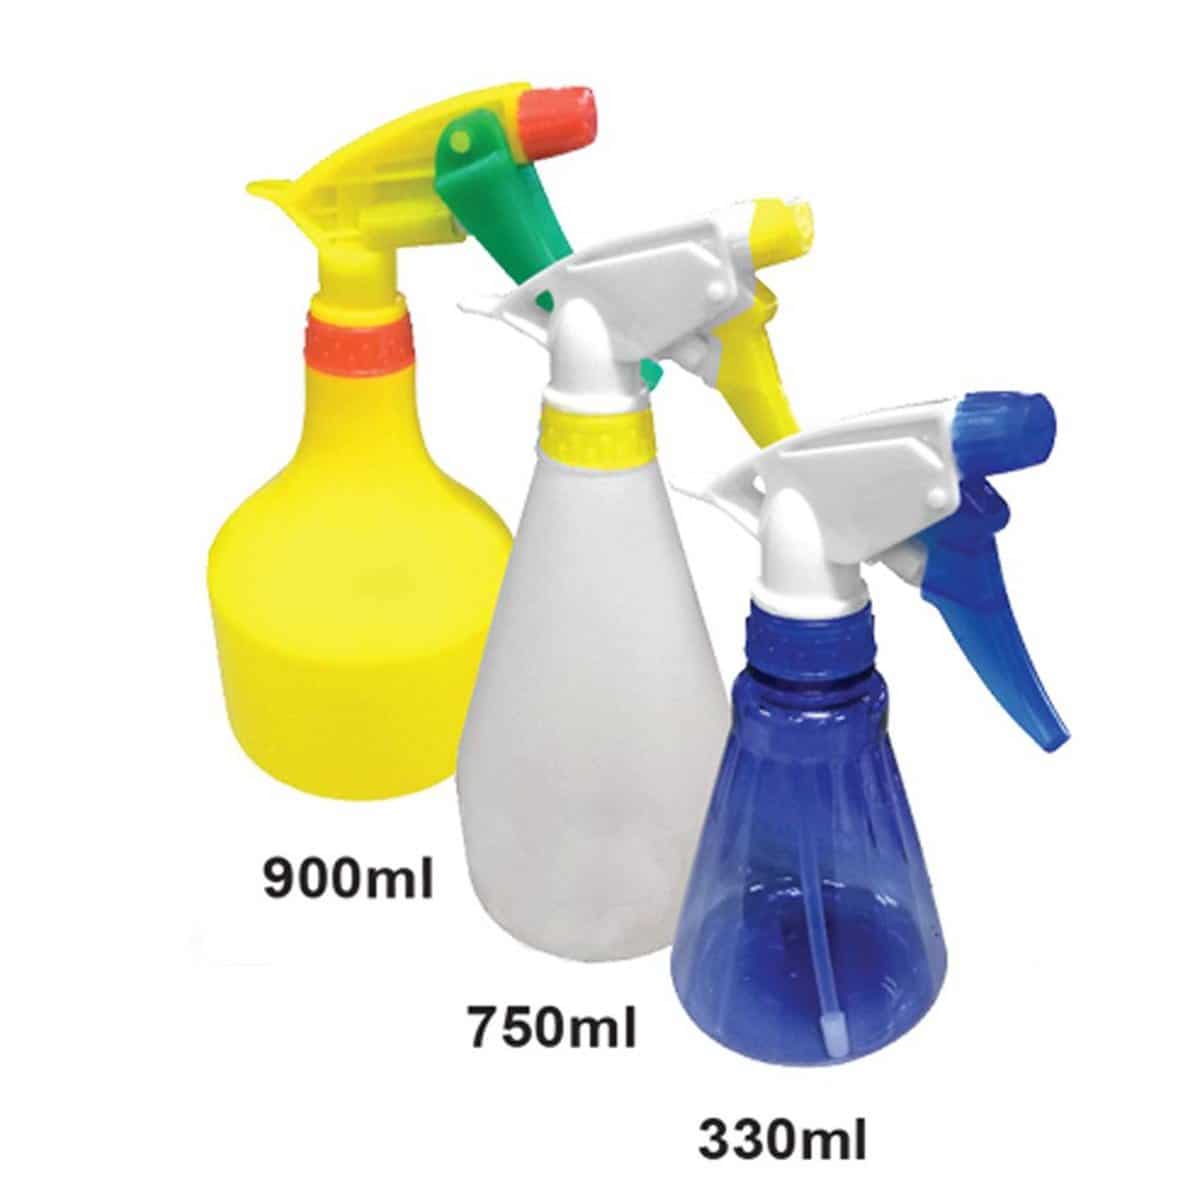 Aneka Pump Garden Spray Mist Hand Trigger Water Sprayer 750ml ITS750